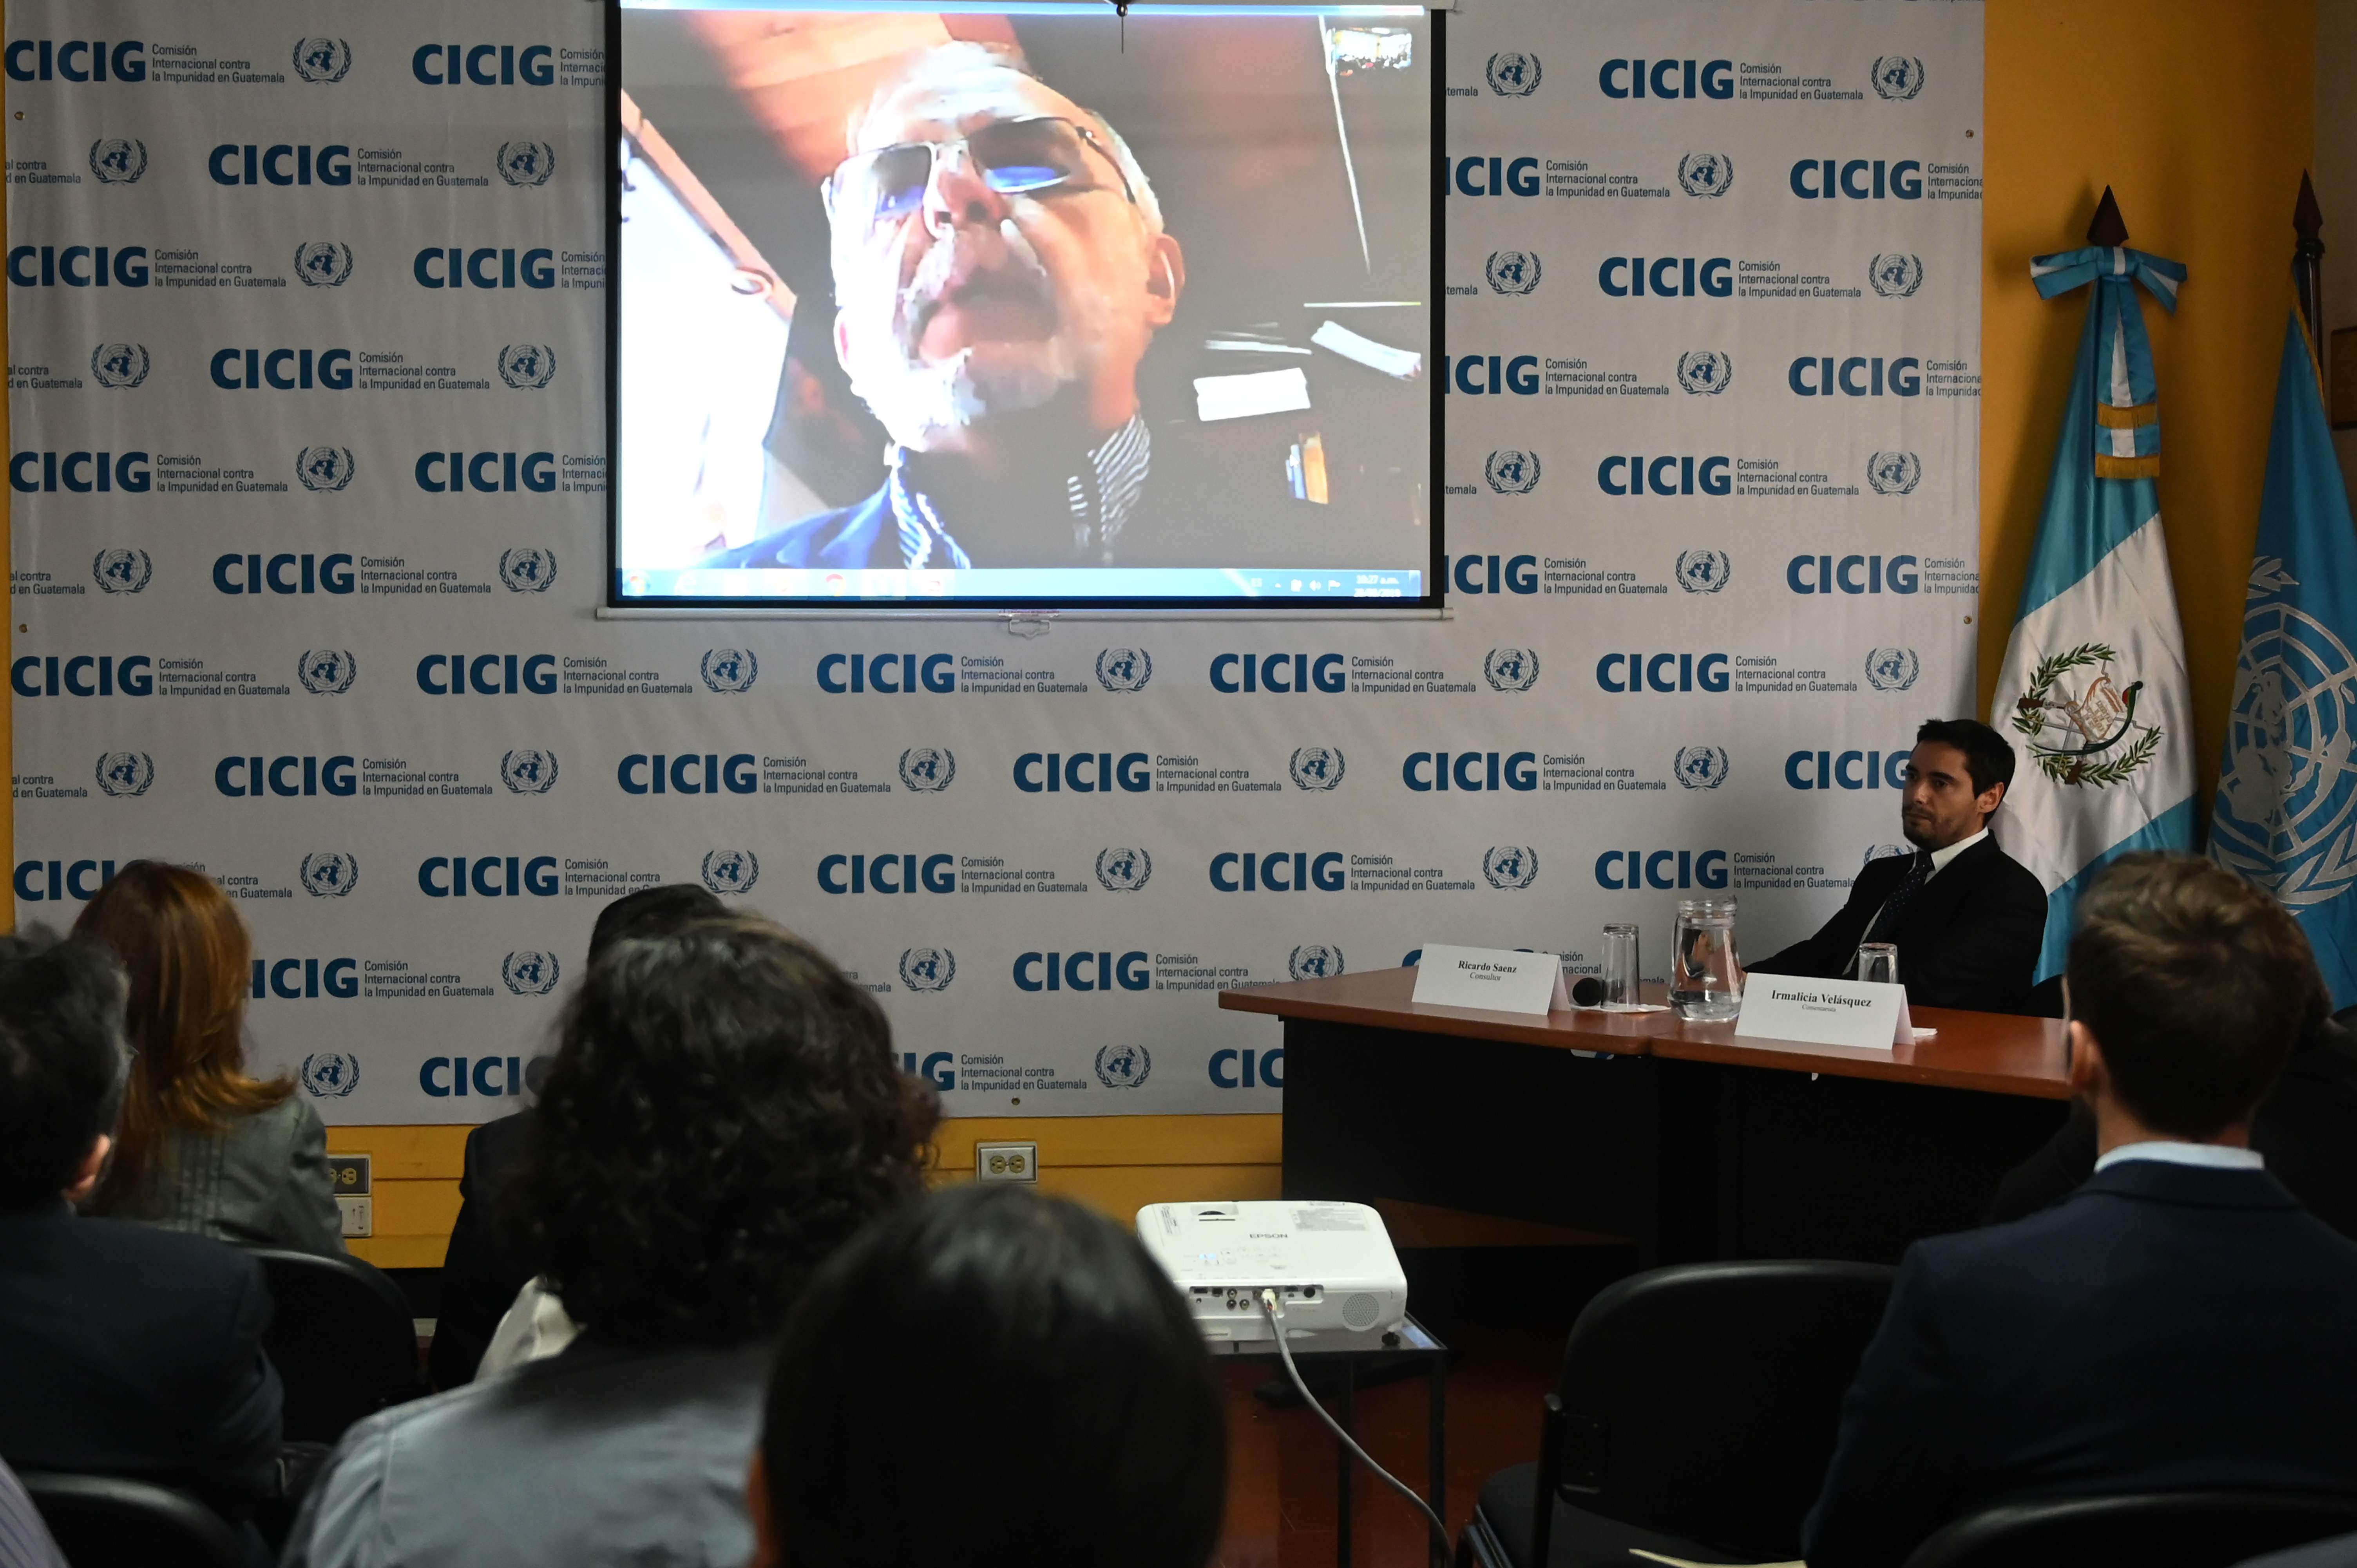 La Cicig presentó el informe "Guatemala: un Estado capturado" en su último día de actividades públicas previo a retirarse del país. (Foto Prensa Libre: Johan Ordóñez / Agence France-Presse AFP)